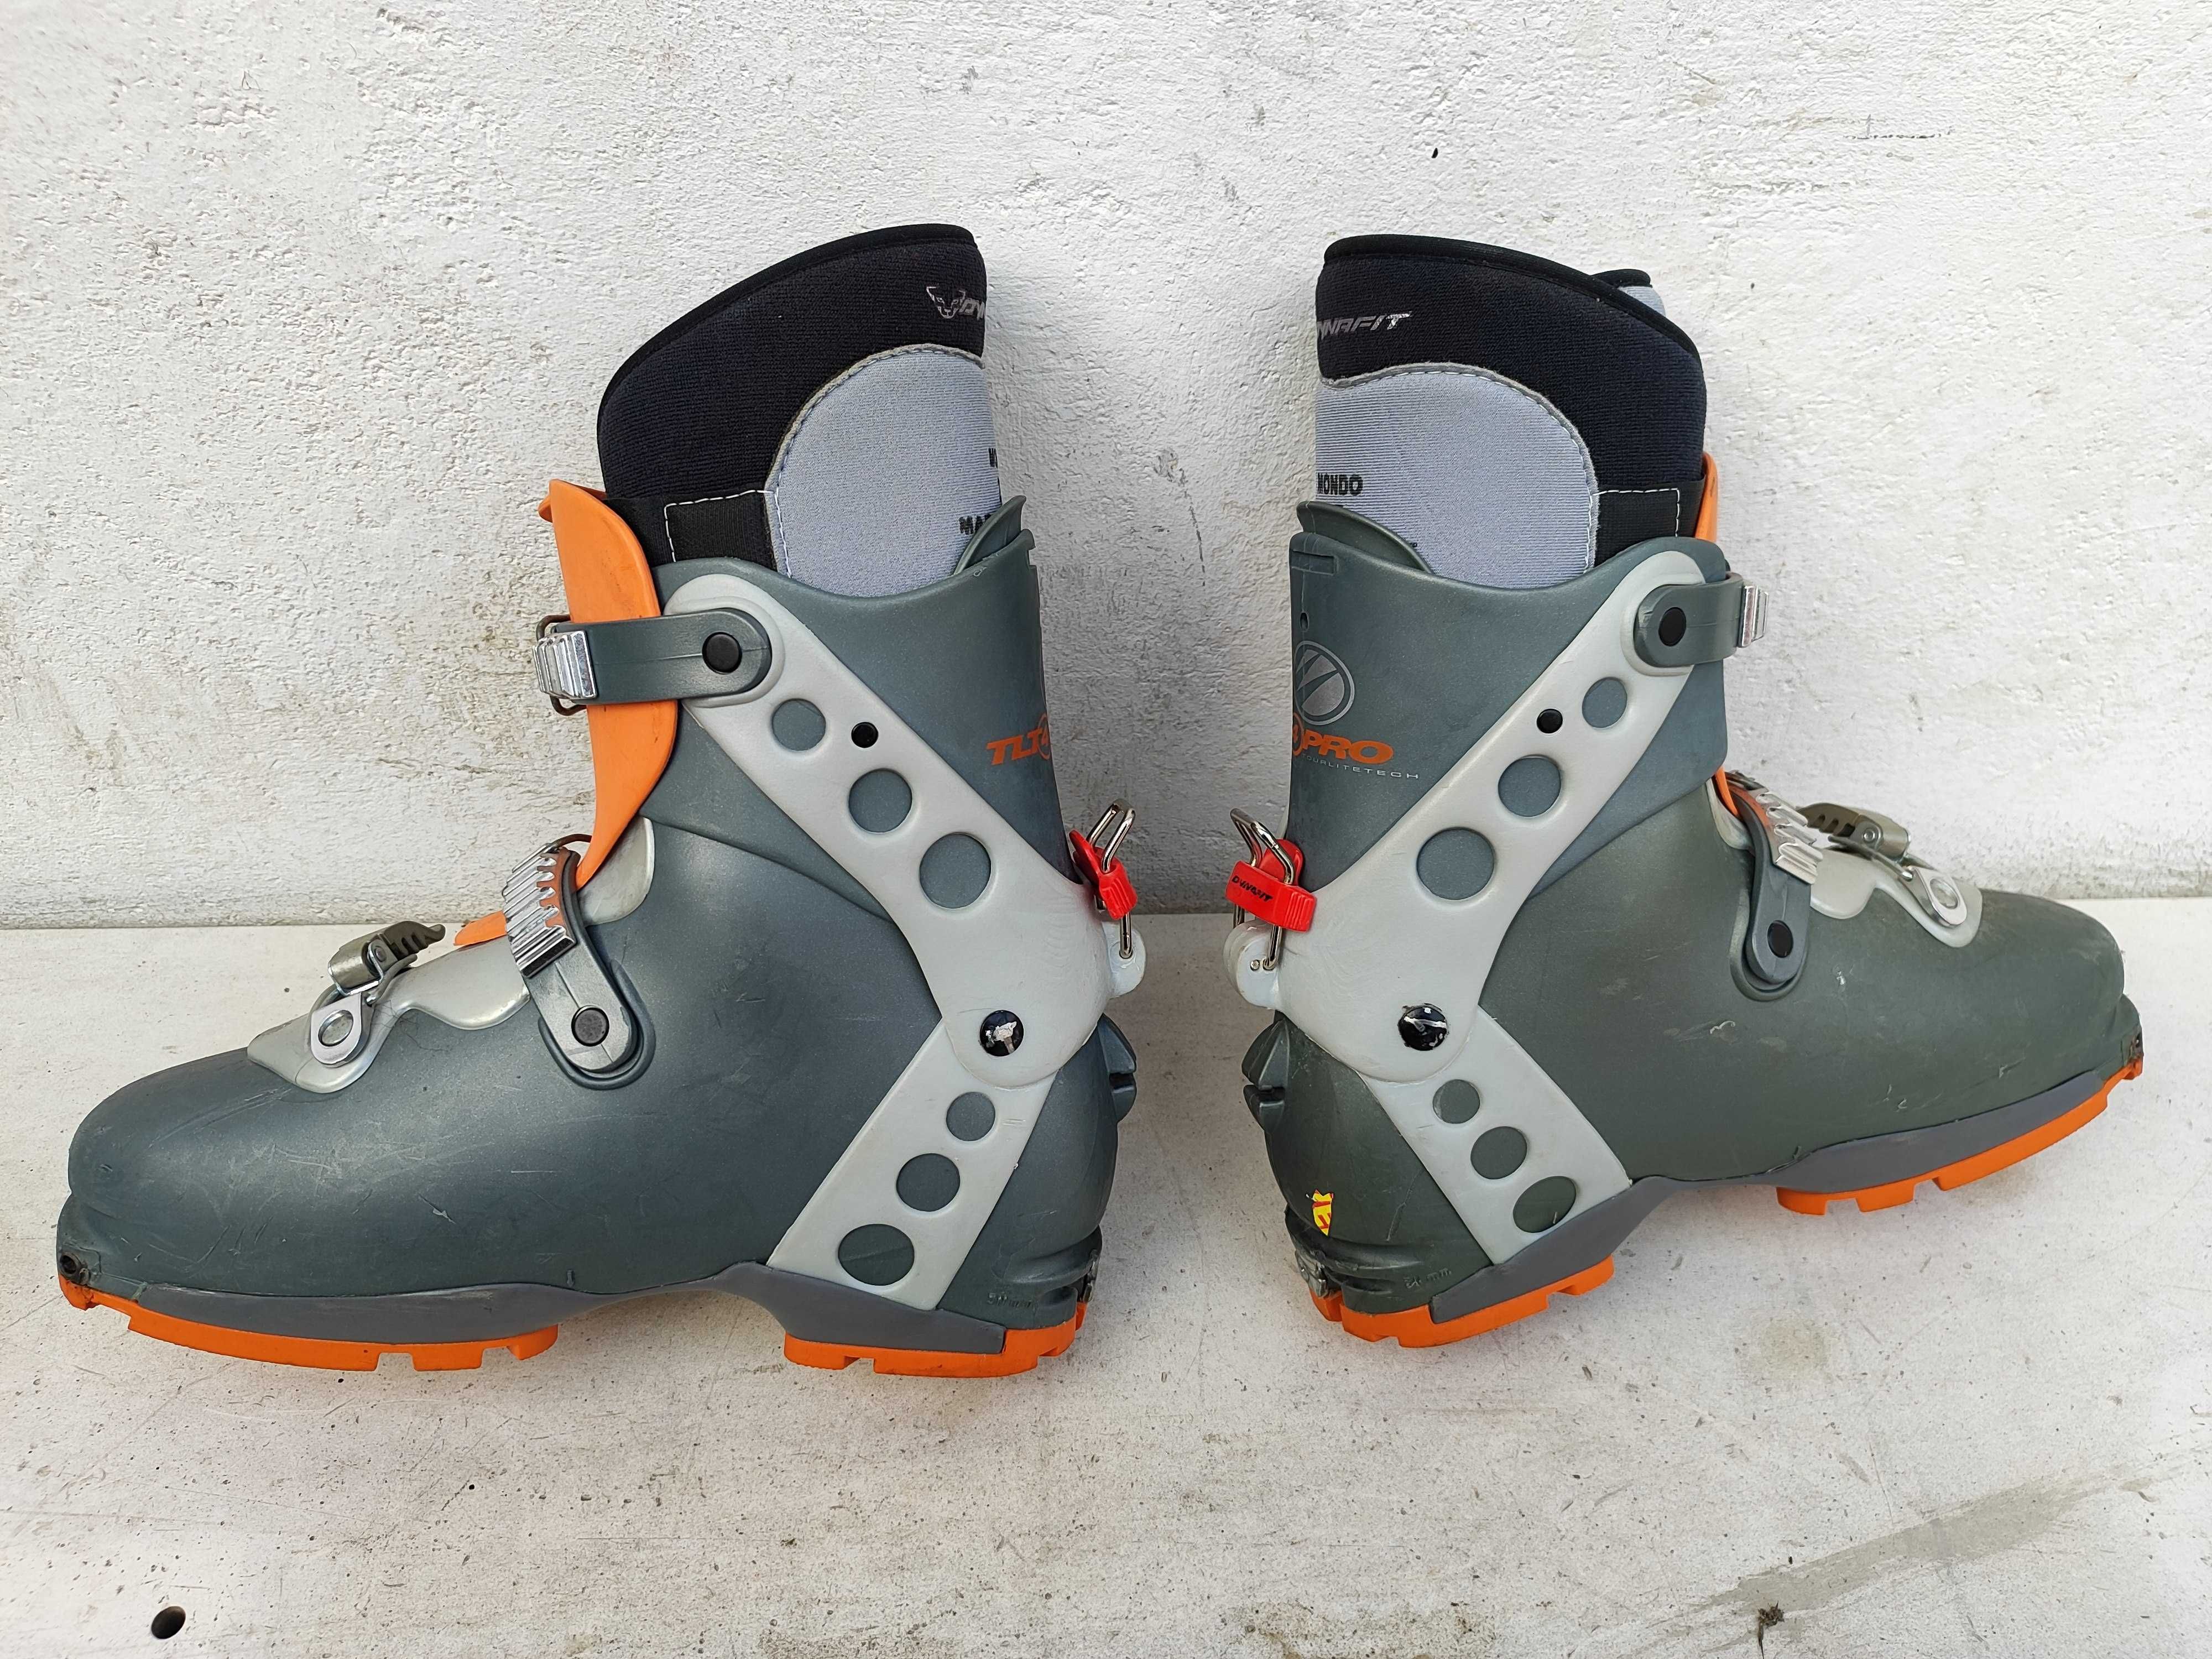 Buty skiturowe DYNAFIT TLT 4 PRO rozmiar 42 wkładka 27cm